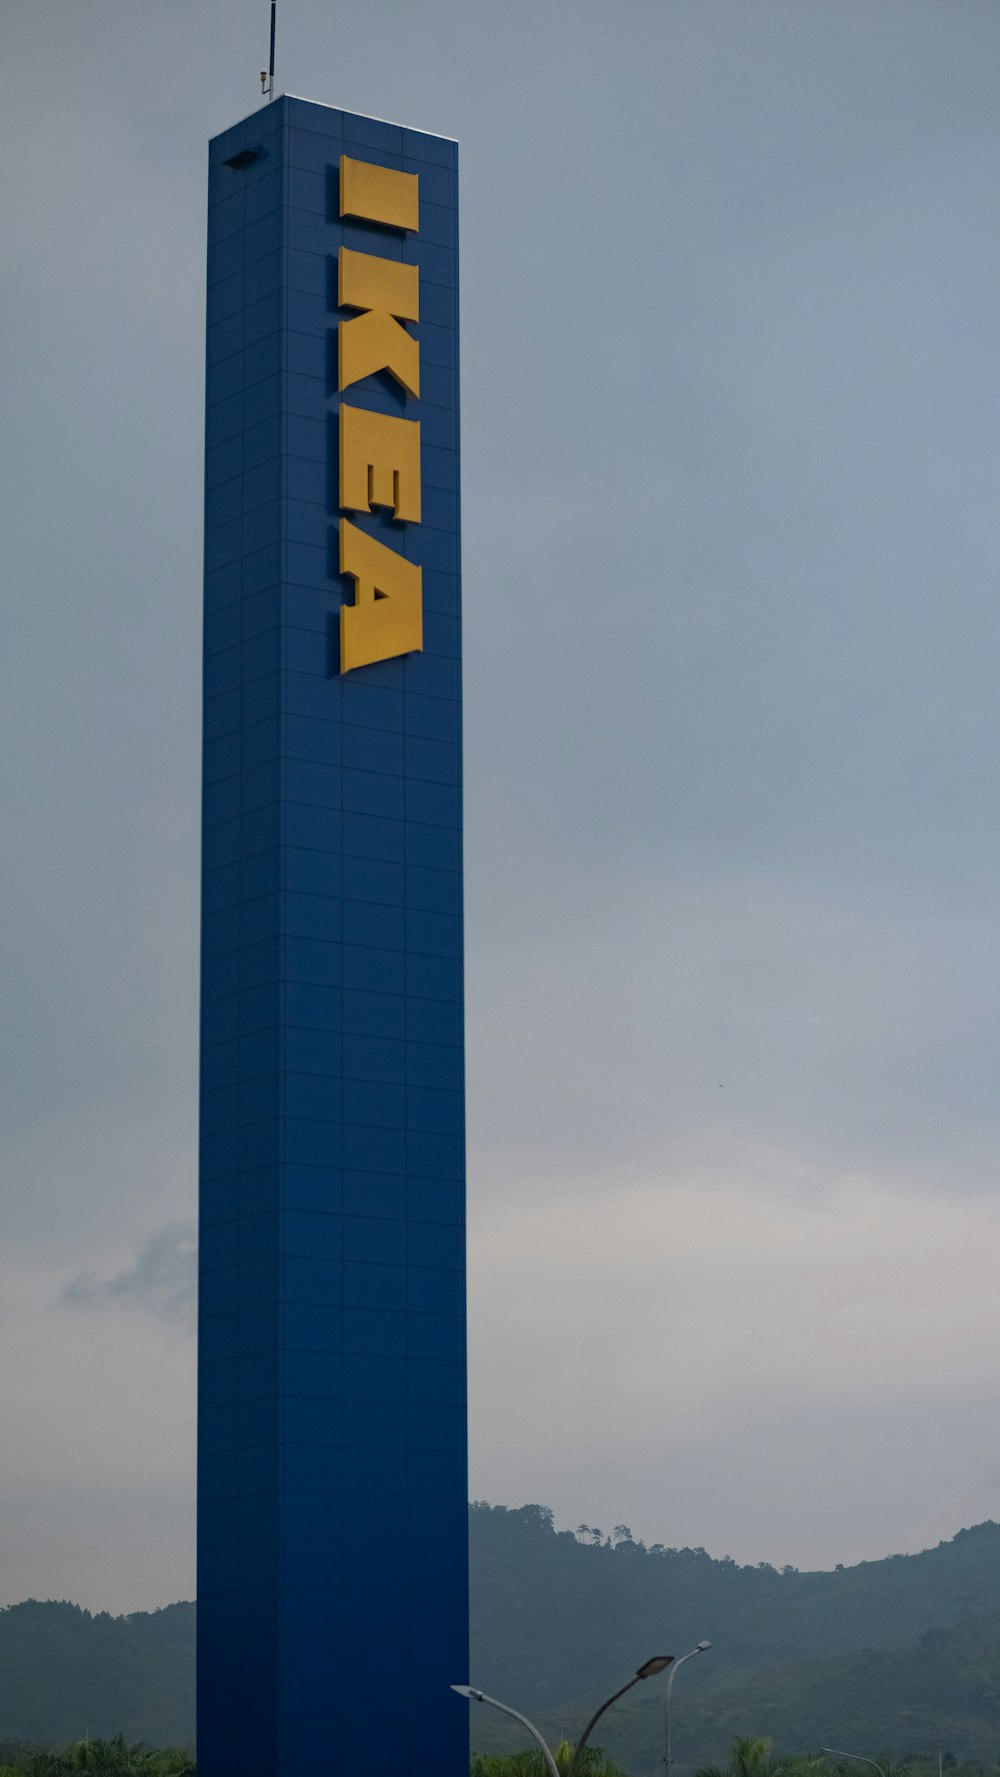 Un edificio alto y azul con la palabra IKEA